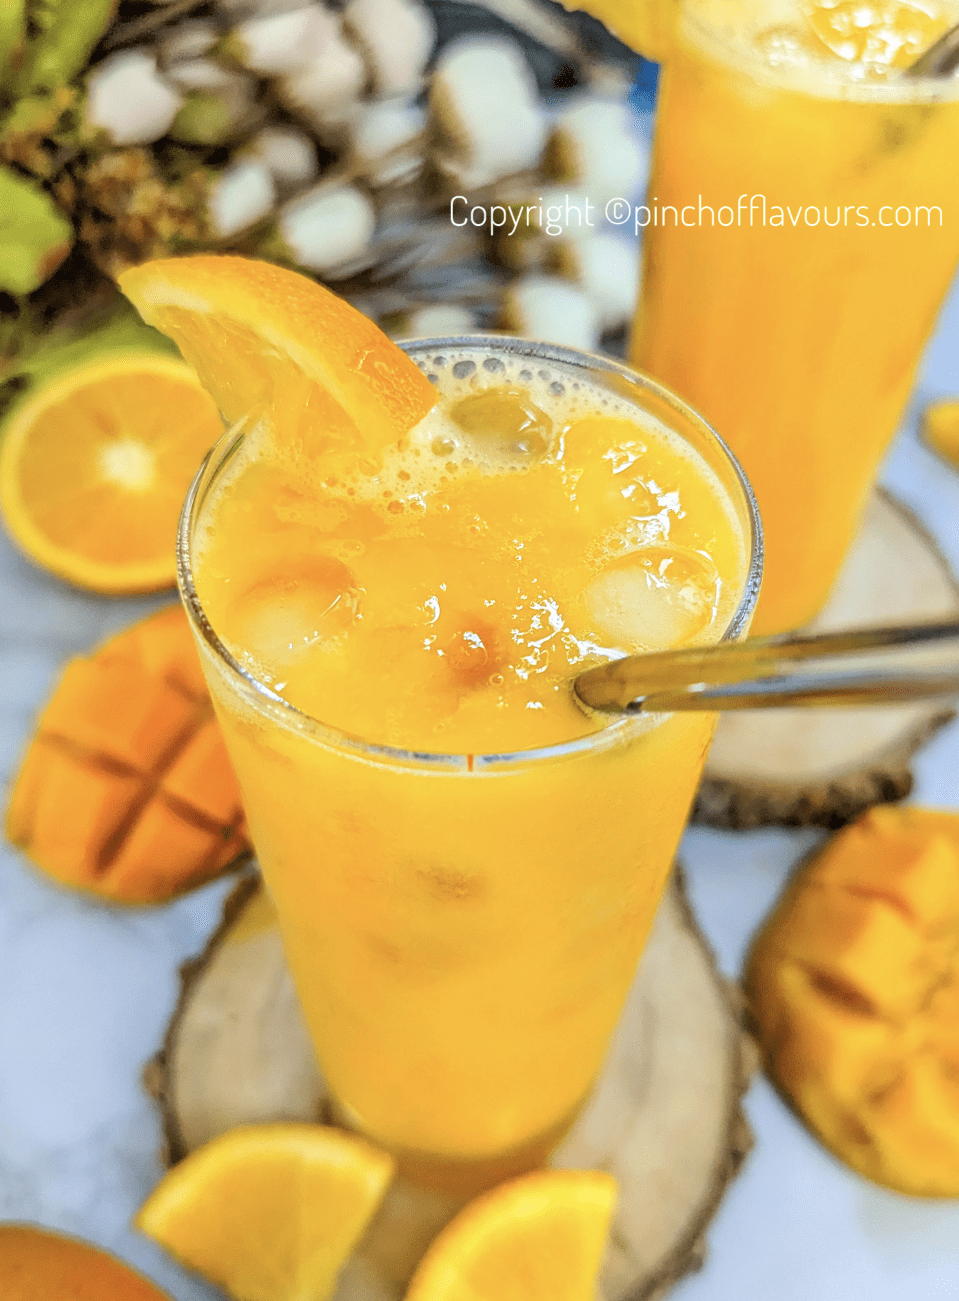 Refreshing Orange Mango Juice